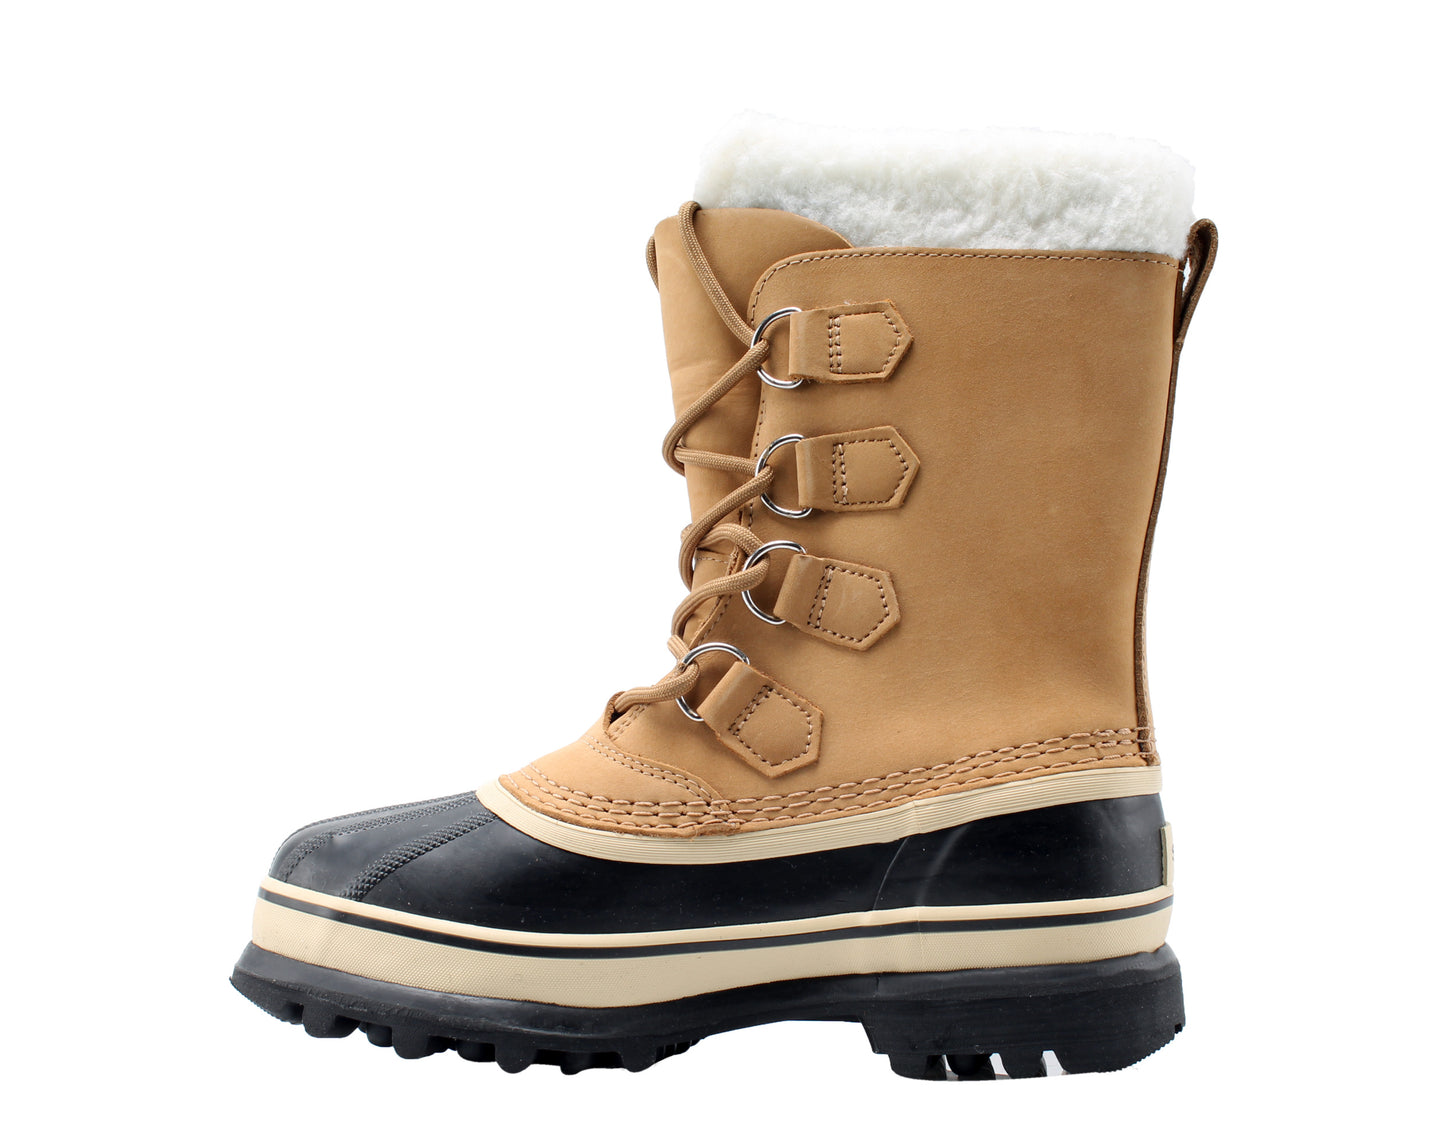 Sorel Caribou Buff Tan Women's Waterproof Winter Snow Boots 1003812-280